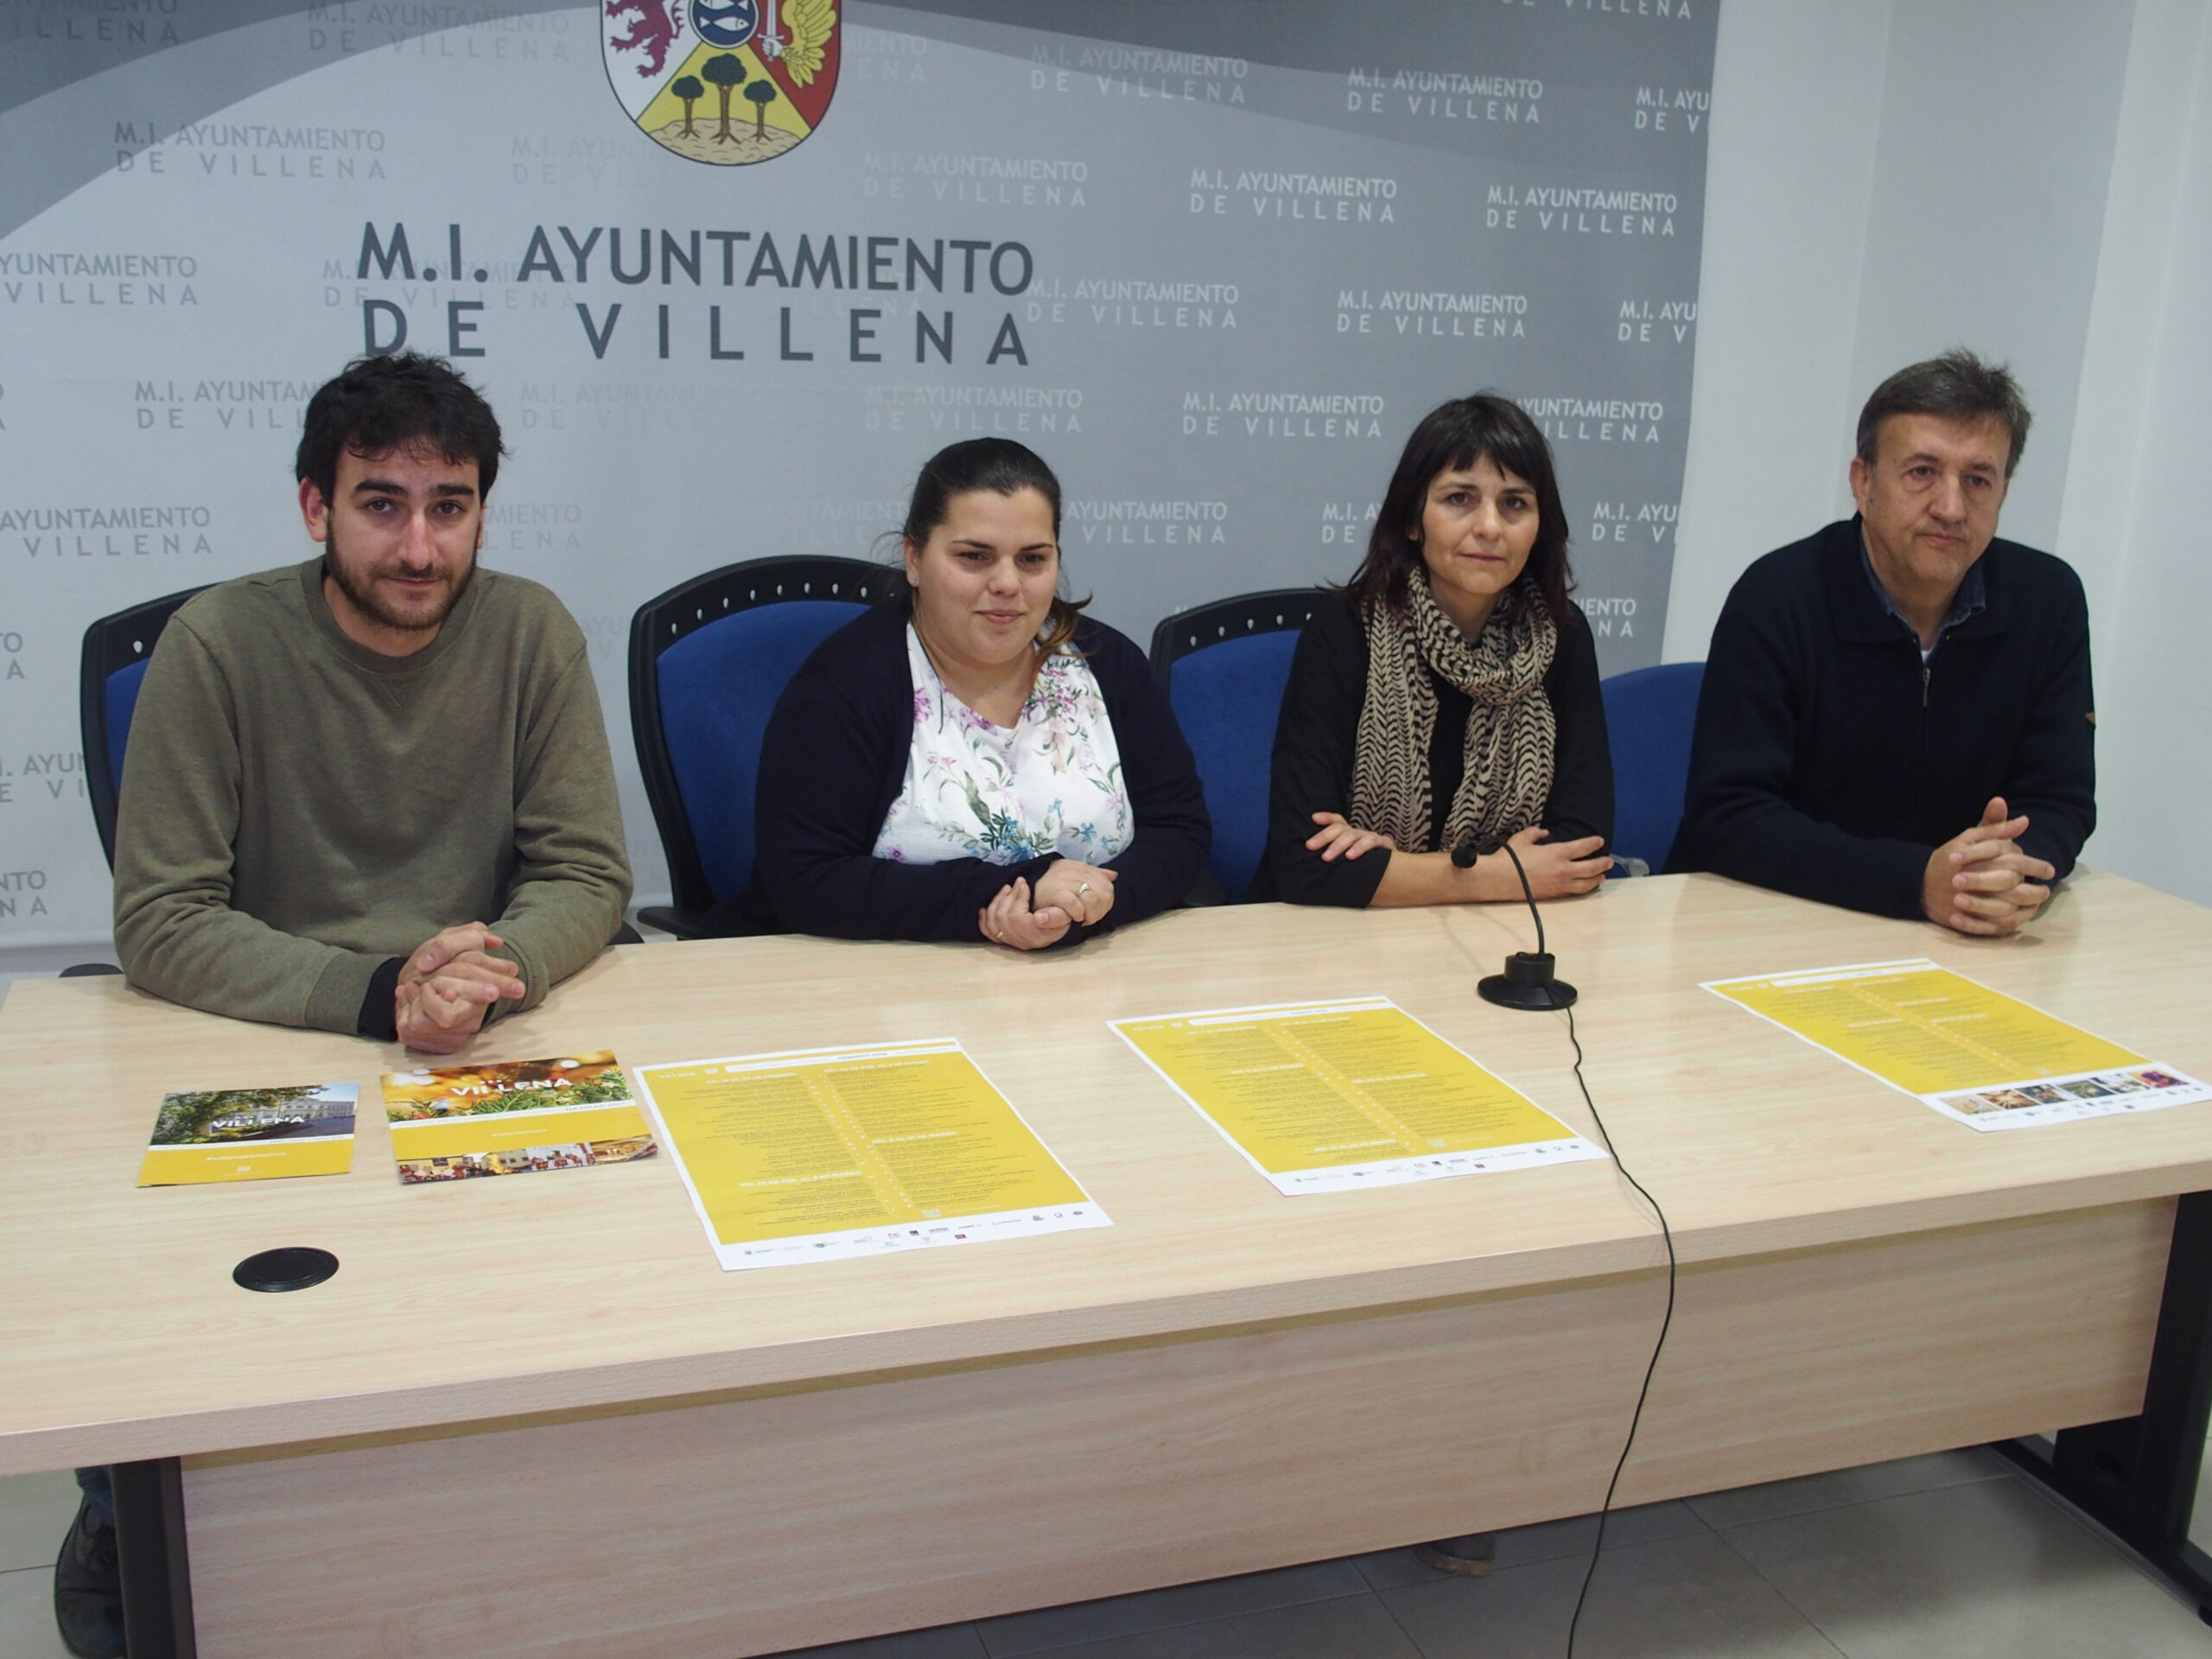 La Agenda de actividades en Villena incorpora código QR para facilitar el acceso digital